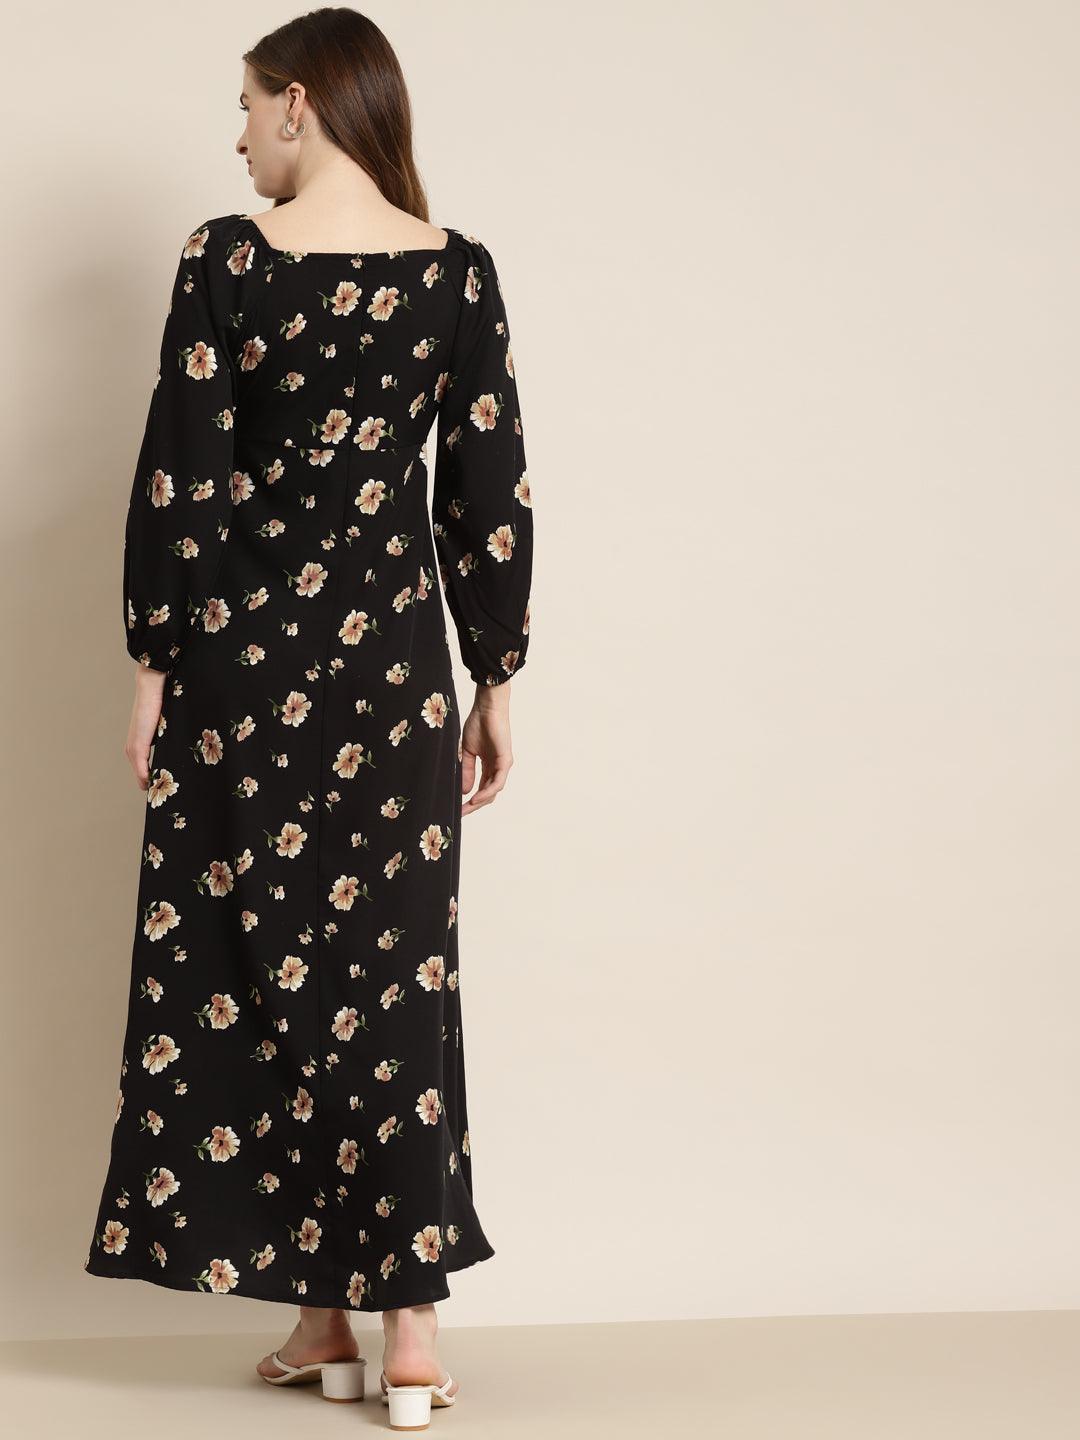 Qurvii Black Floral Long Dress - Qurvii India